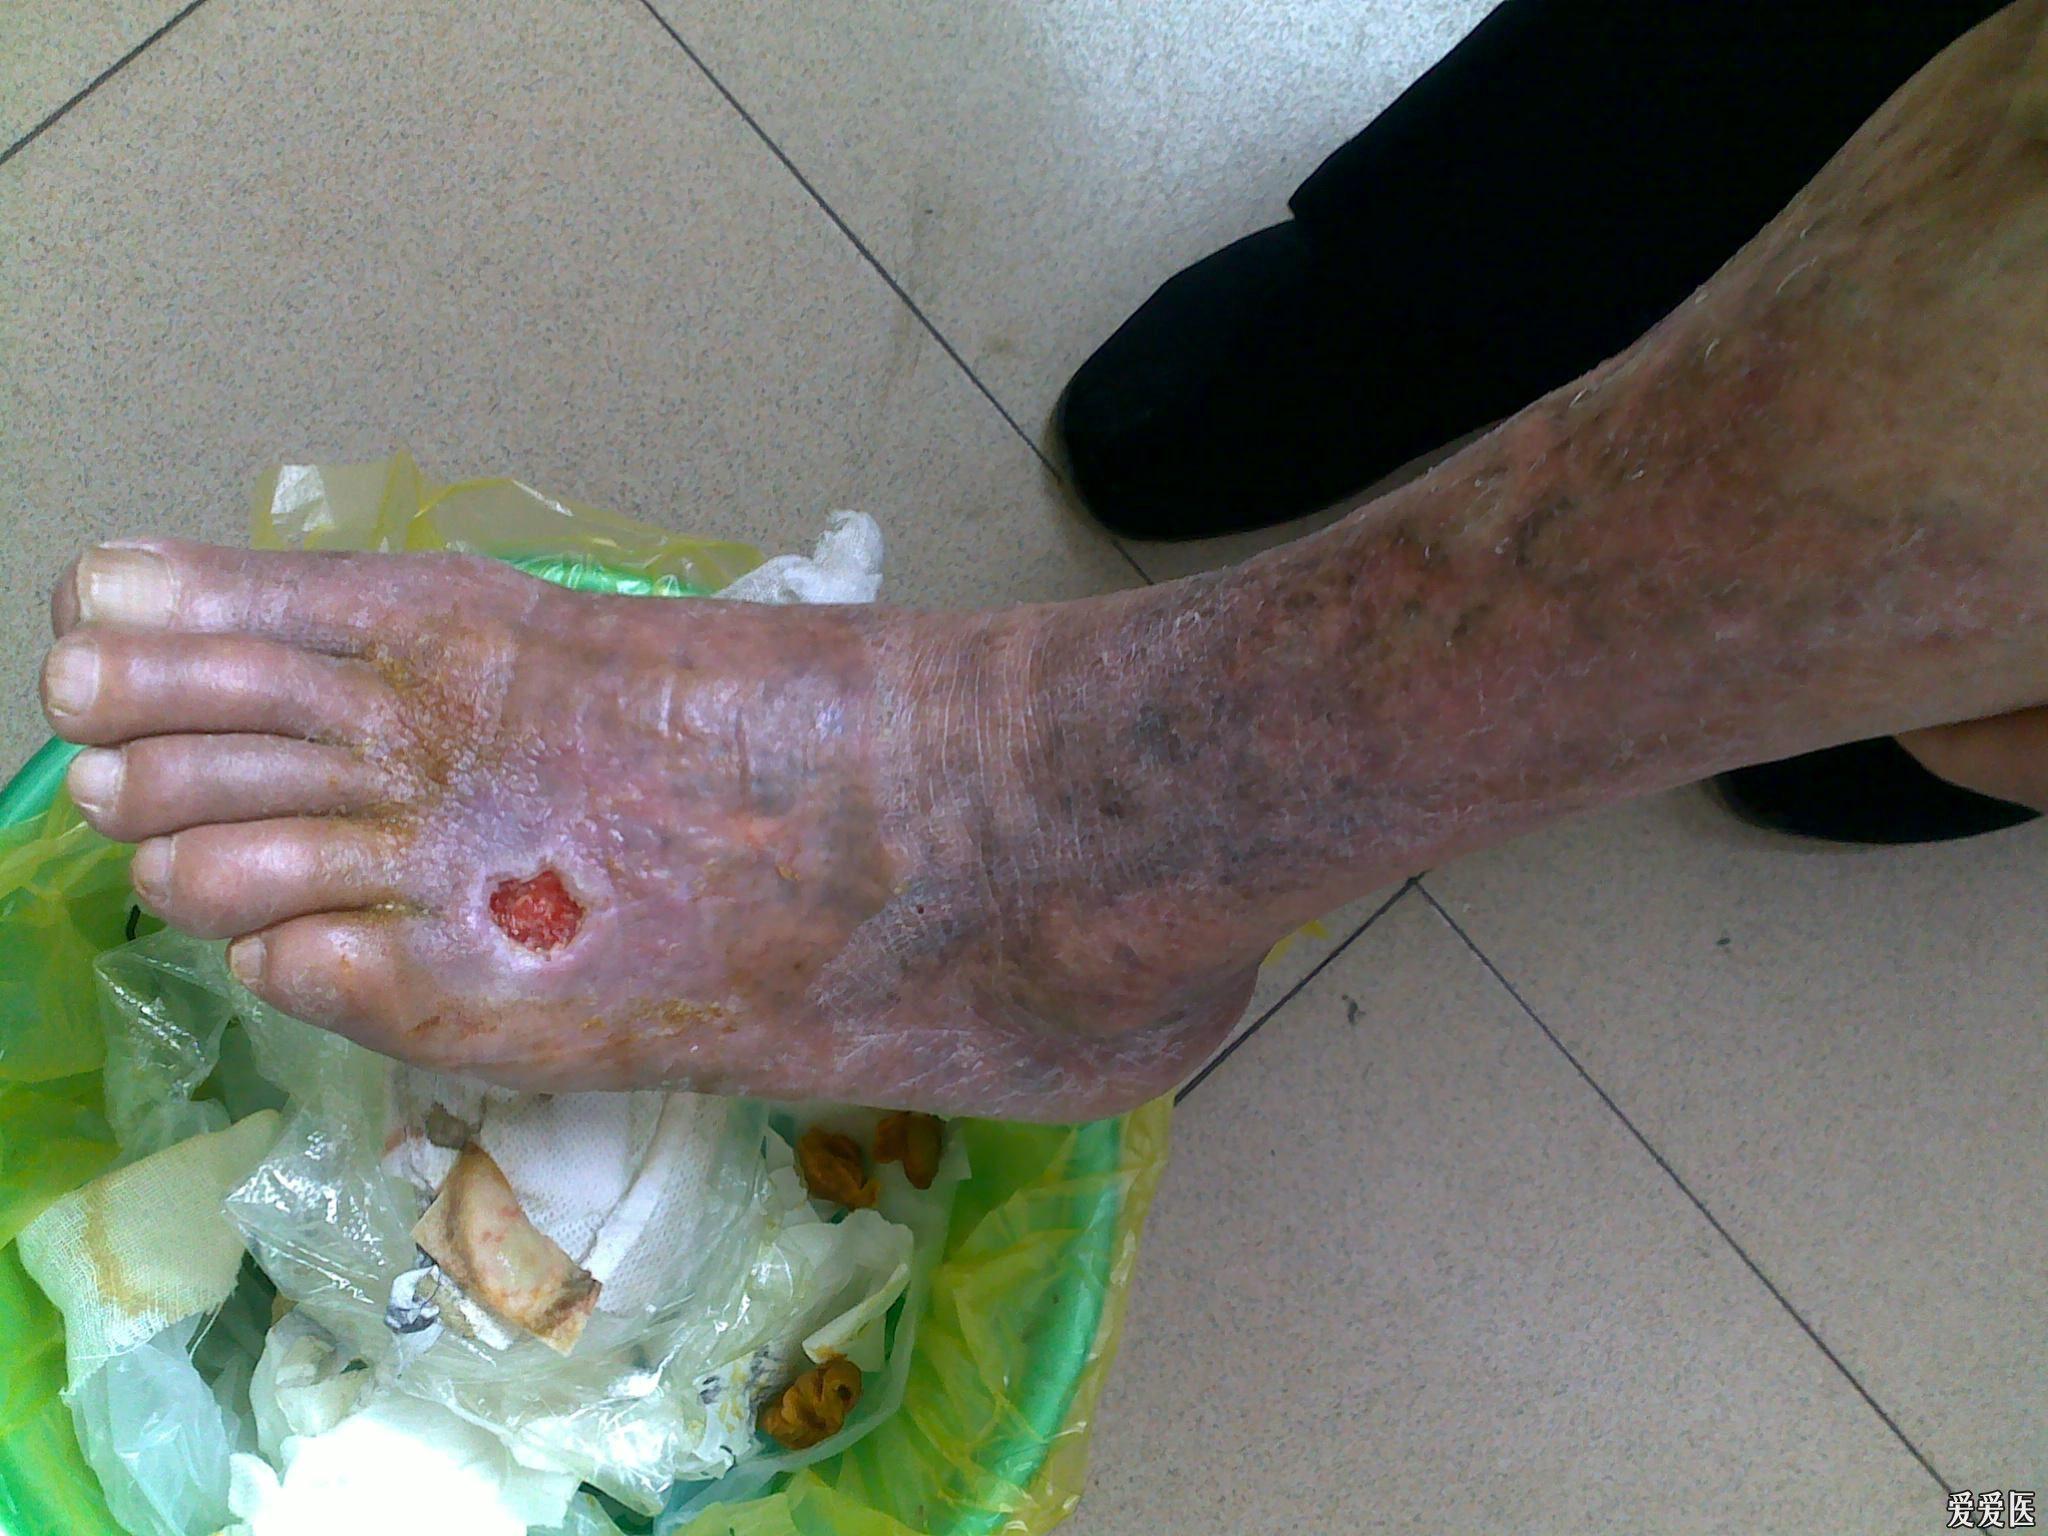 请帮我看看我的病人的下肢脚背皮肤溃烂的处理方法